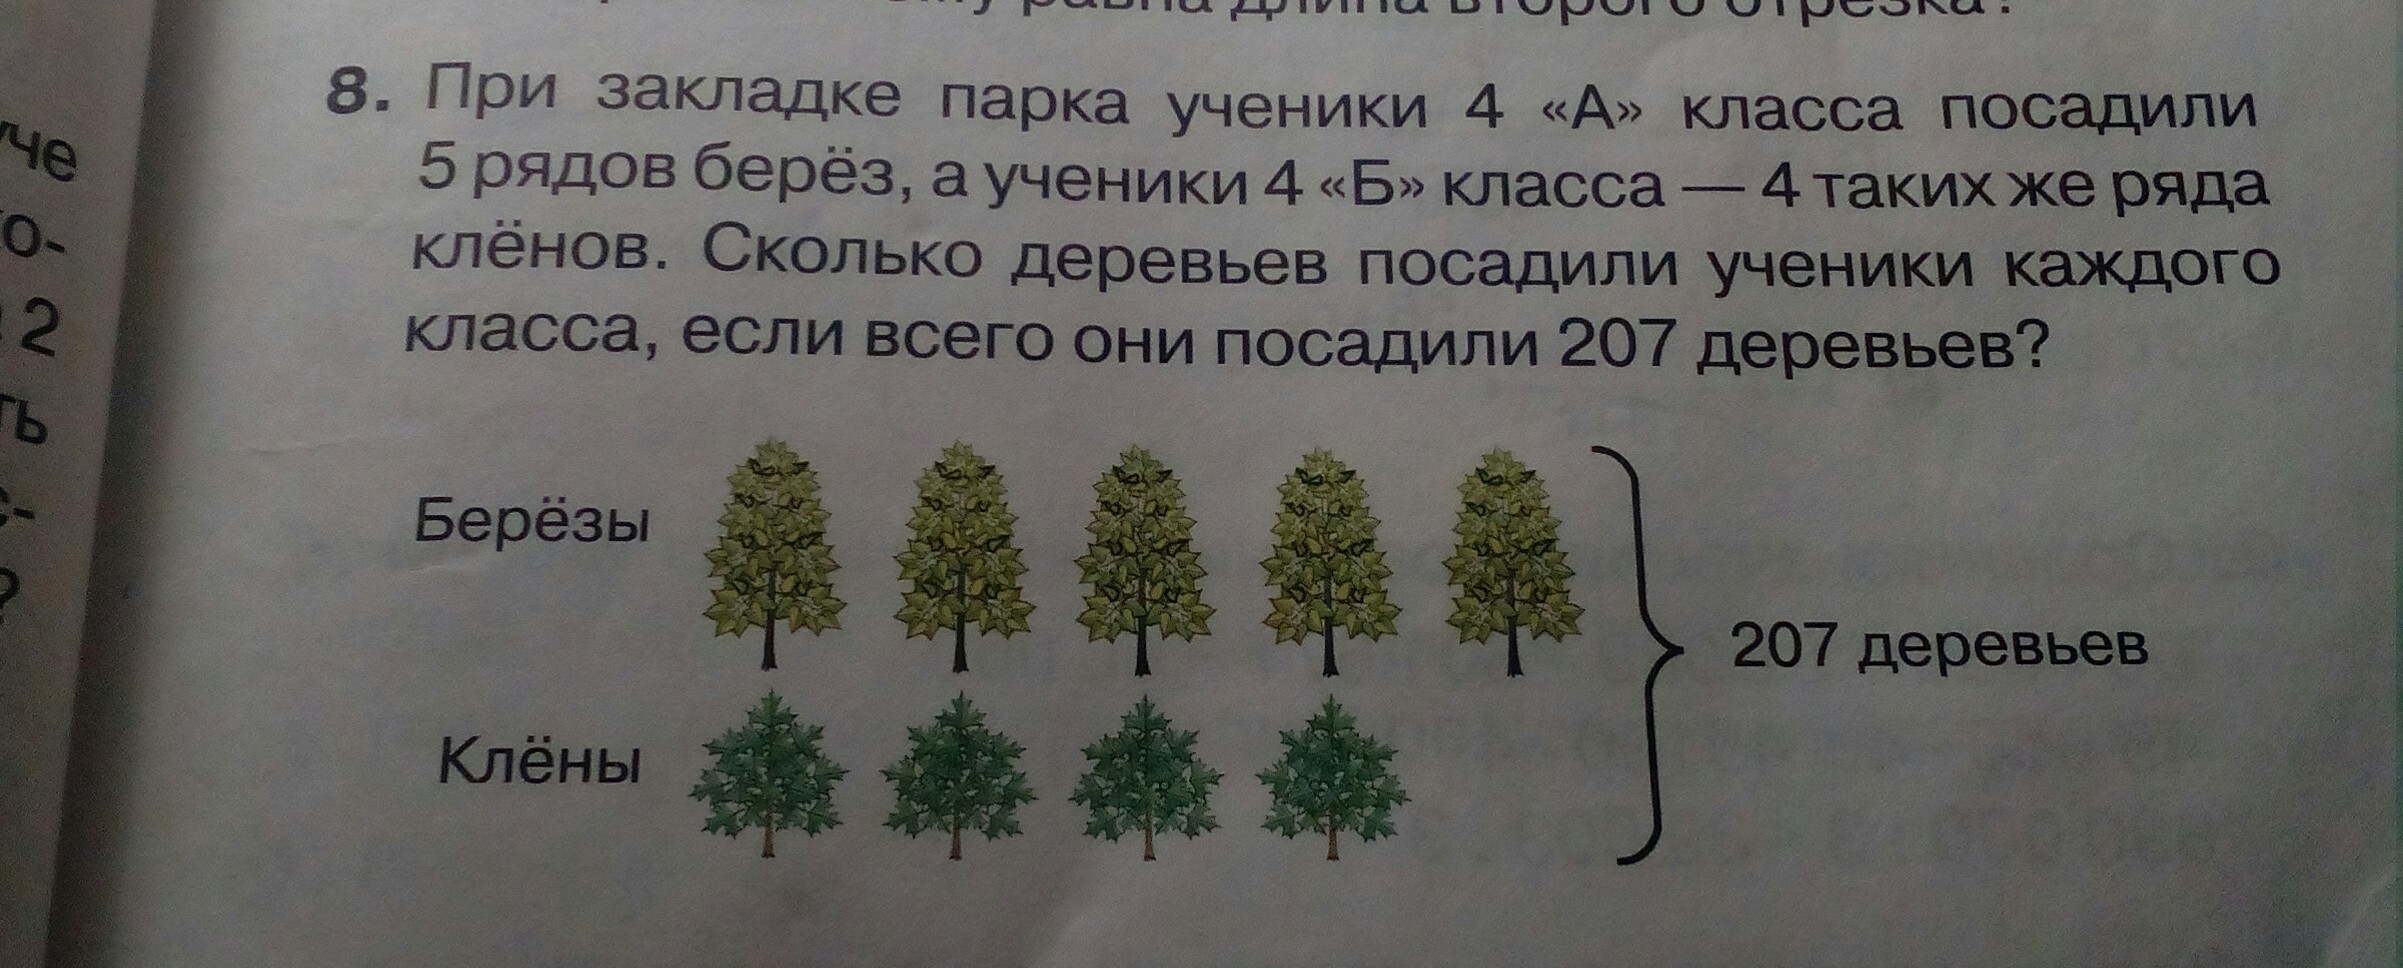 В парке растет 40 берез количество. Ряд деревьев в парке. Три класса школьников сажали деревья первый. Задание посади елочки. 6 Рядов деревьев.